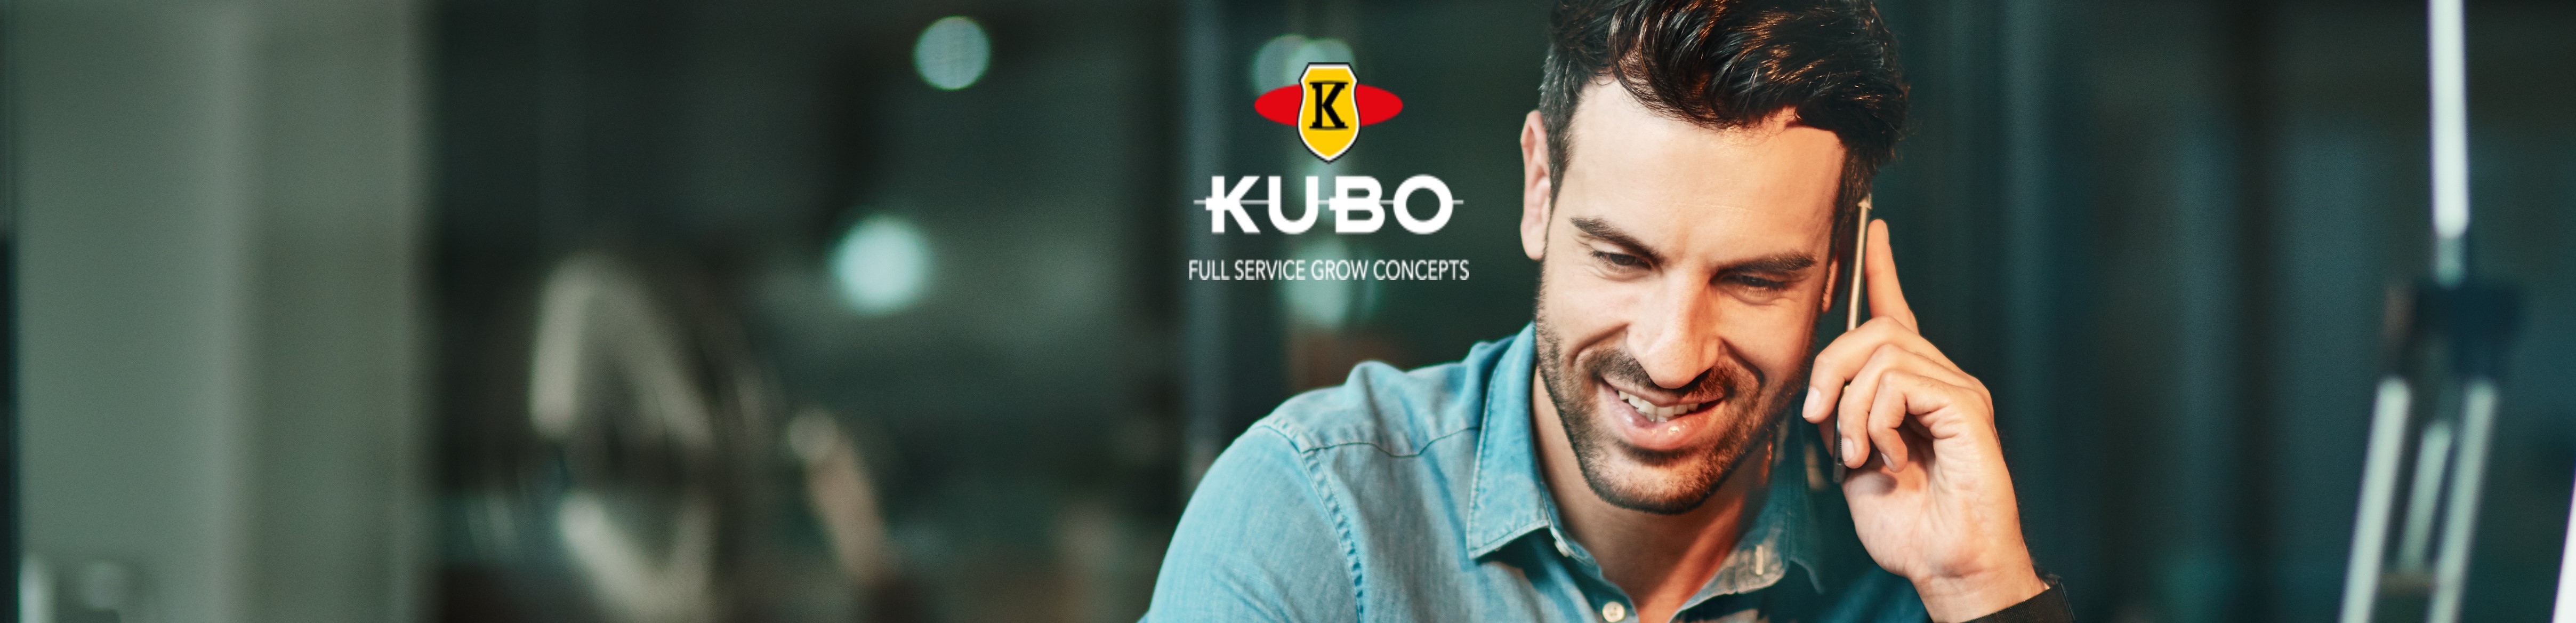 Business Manager Pylot | KUBO